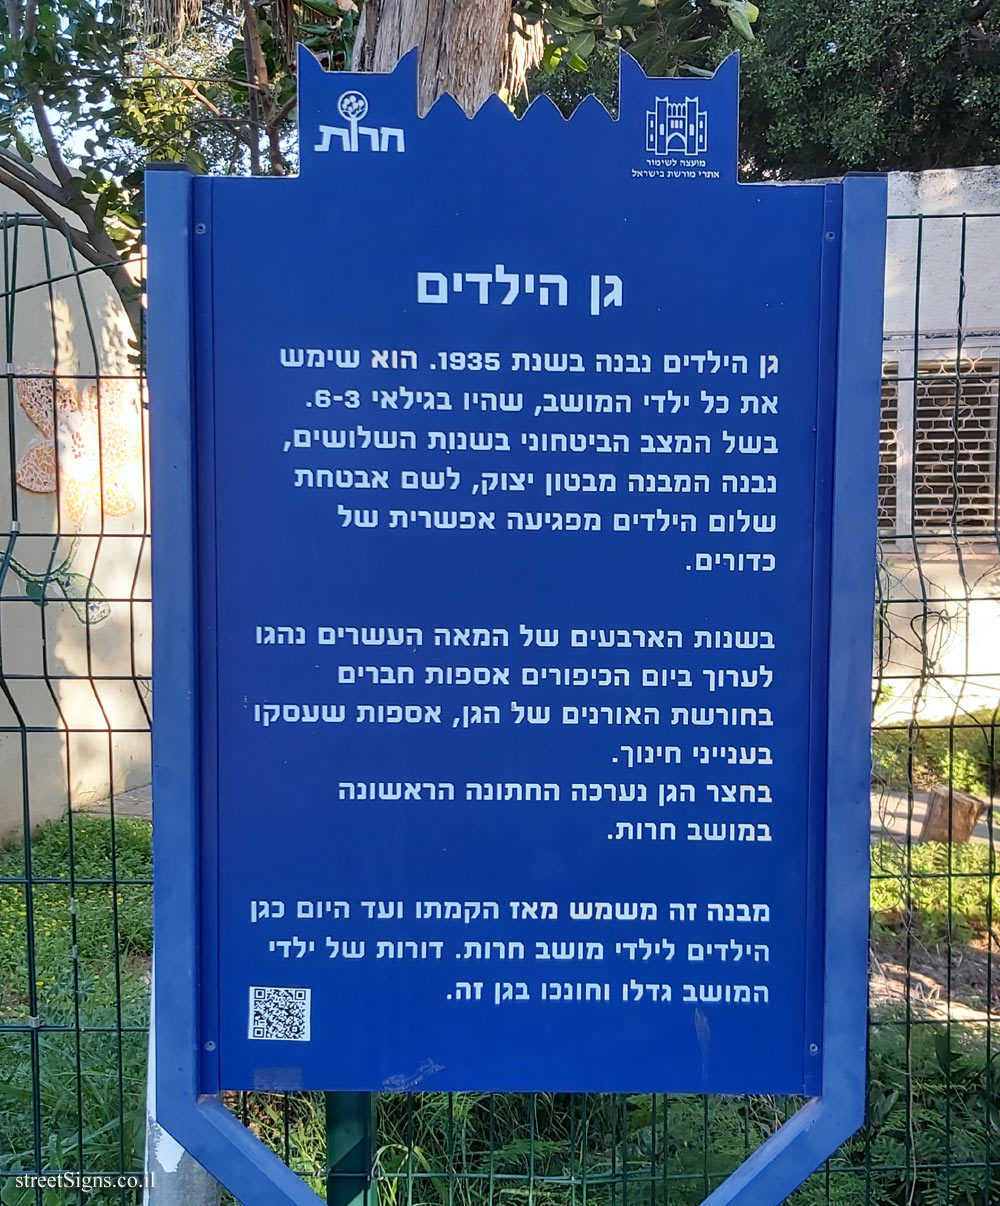 Herut - Heritage Sites in Israel - The Kinder garden